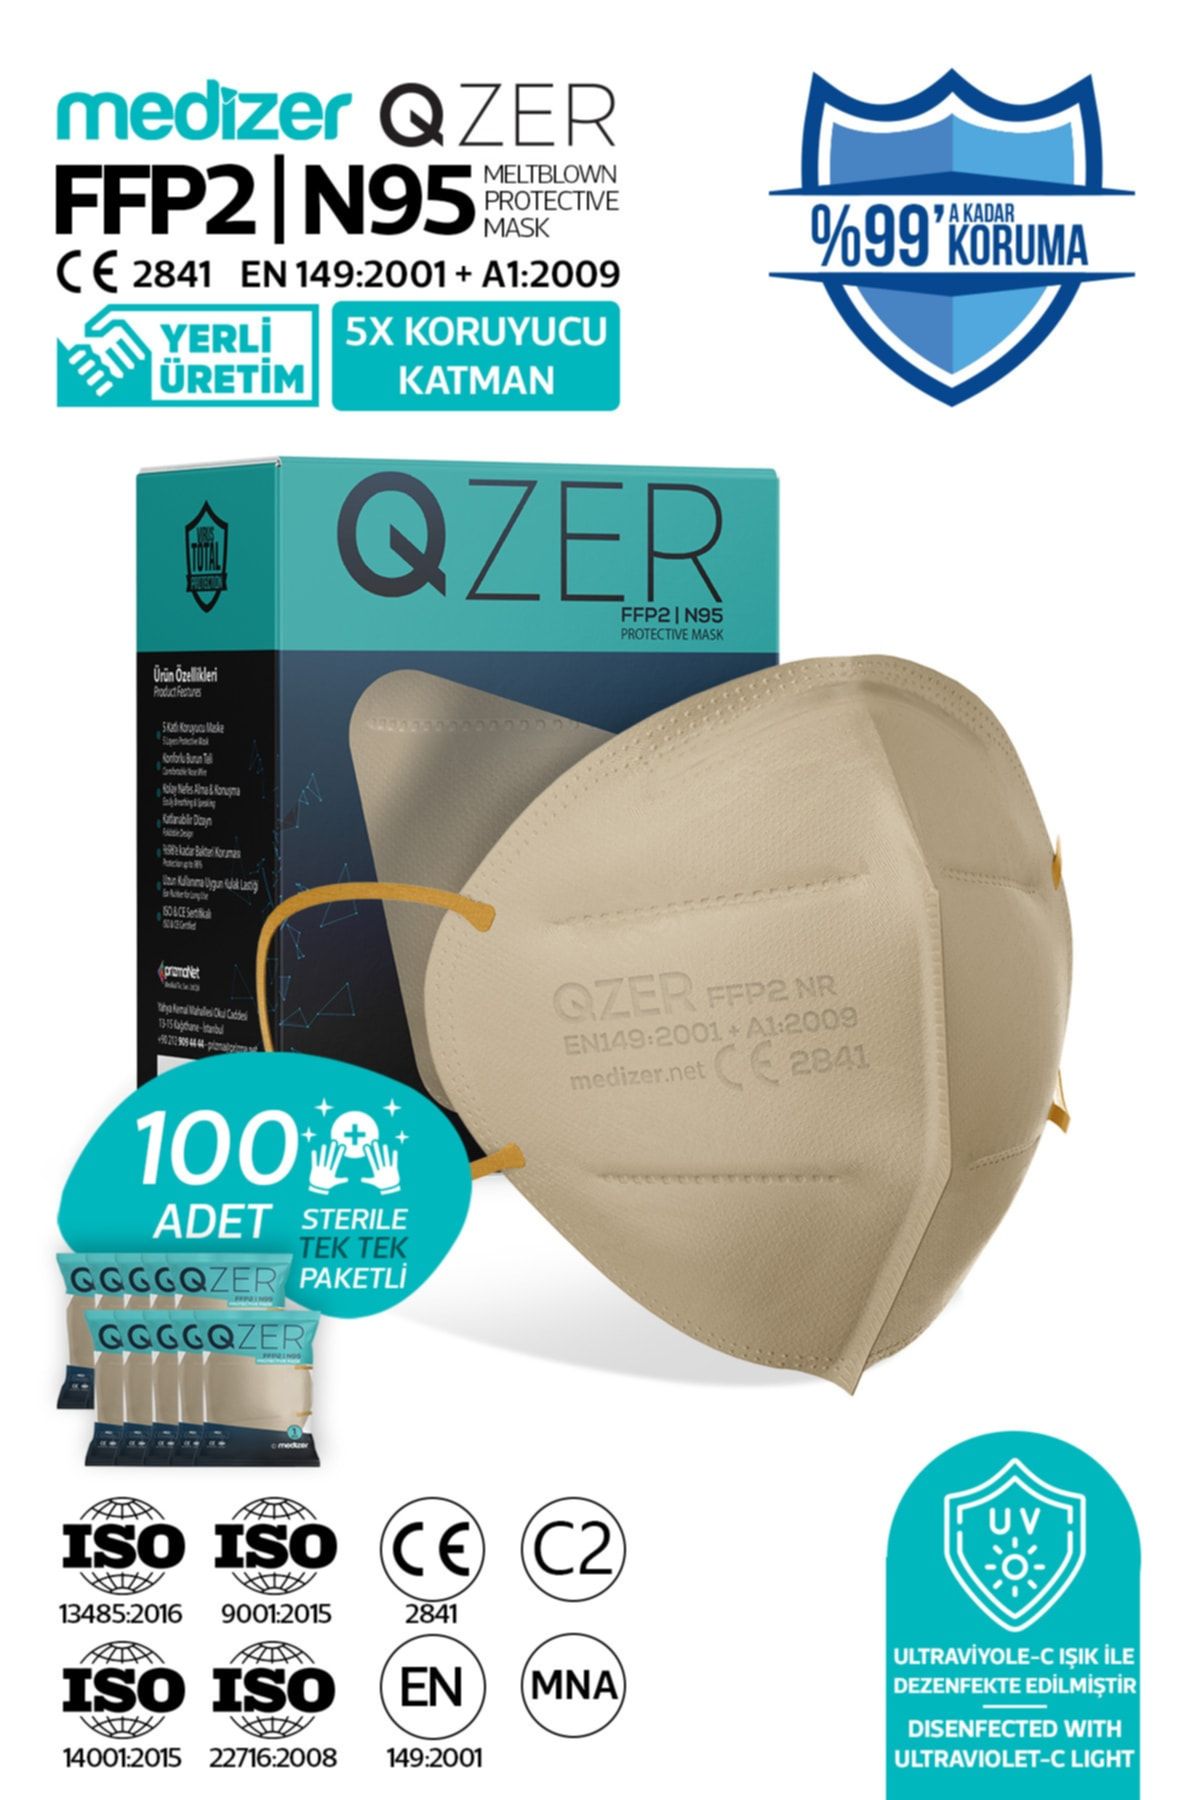 Medizer Qzer 100 Adet Krem Renk 5 Katmanlı N95 Maske